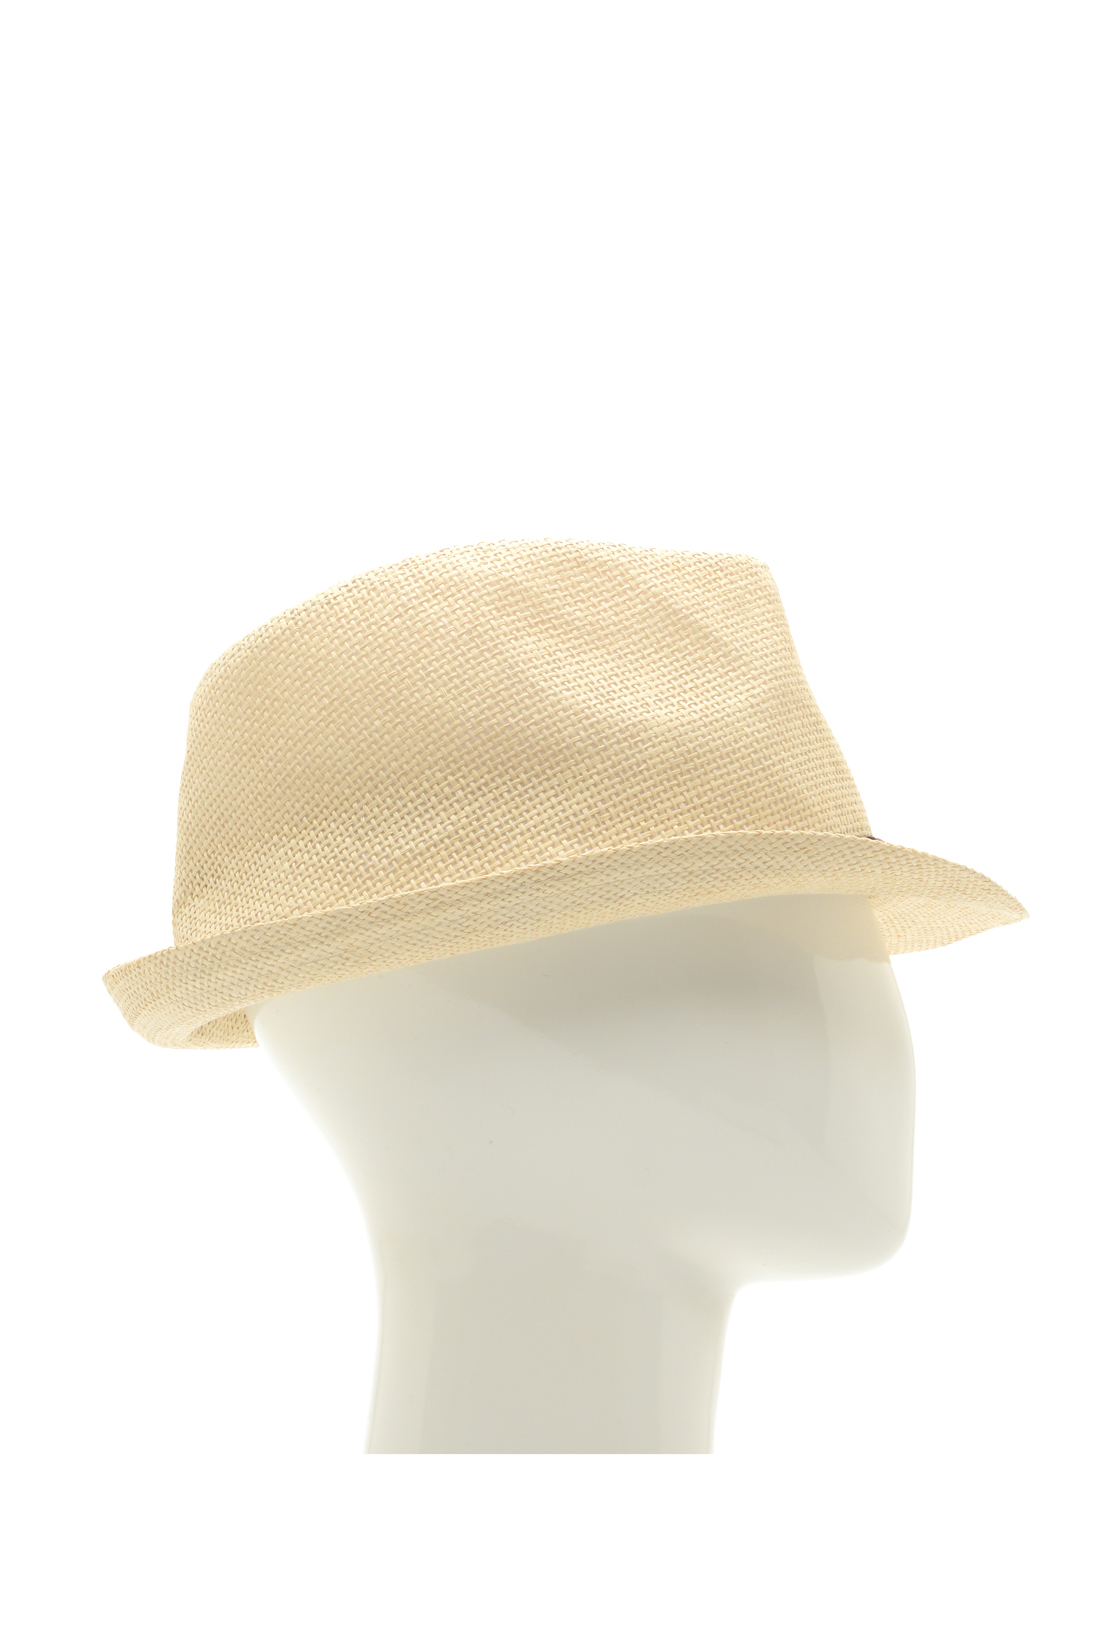 Шляпа с отделкой из кожи (арт. baon B848001), размер Б/р 58, цвет бежевый Шляпа с отделкой из кожи (арт. baon B848001) - фото 2